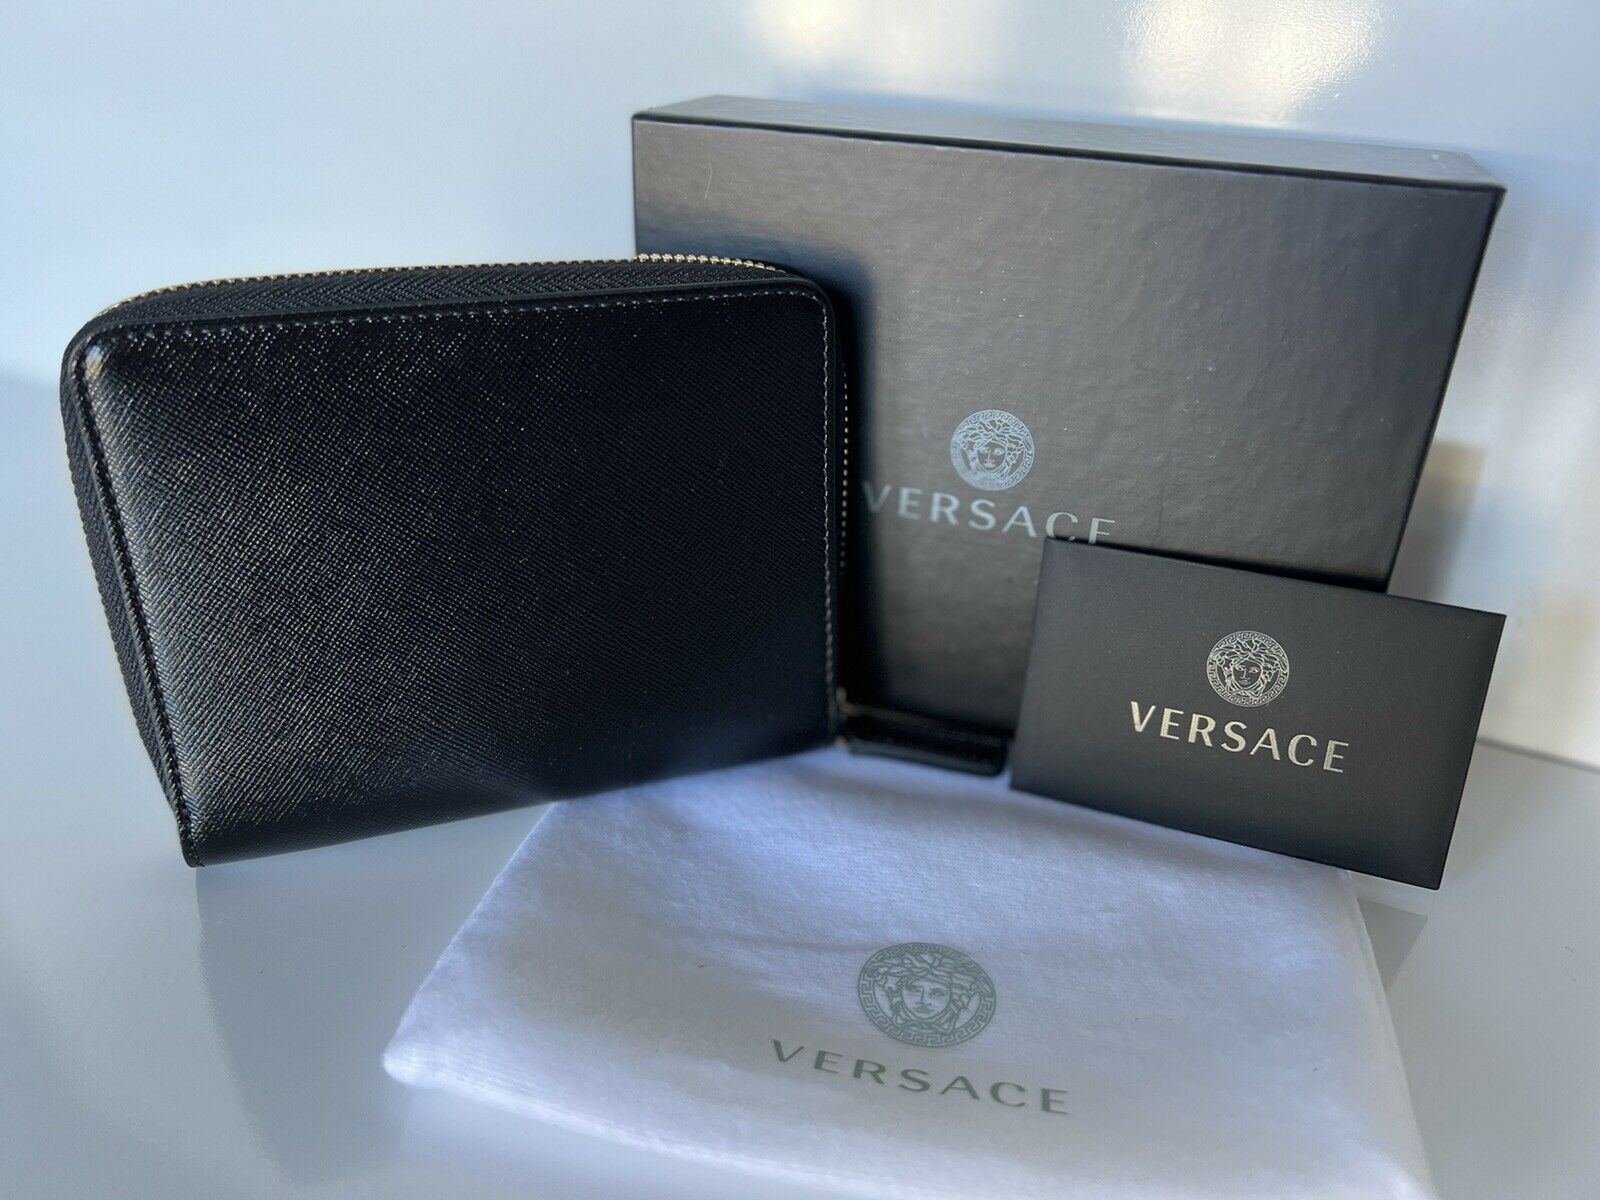 Neu mit Etikett: Versace-Geldbörse mit mittlerem Reißverschluss aus schwarzem Kalbsleder, hergestellt in Italien, Nr. 593 